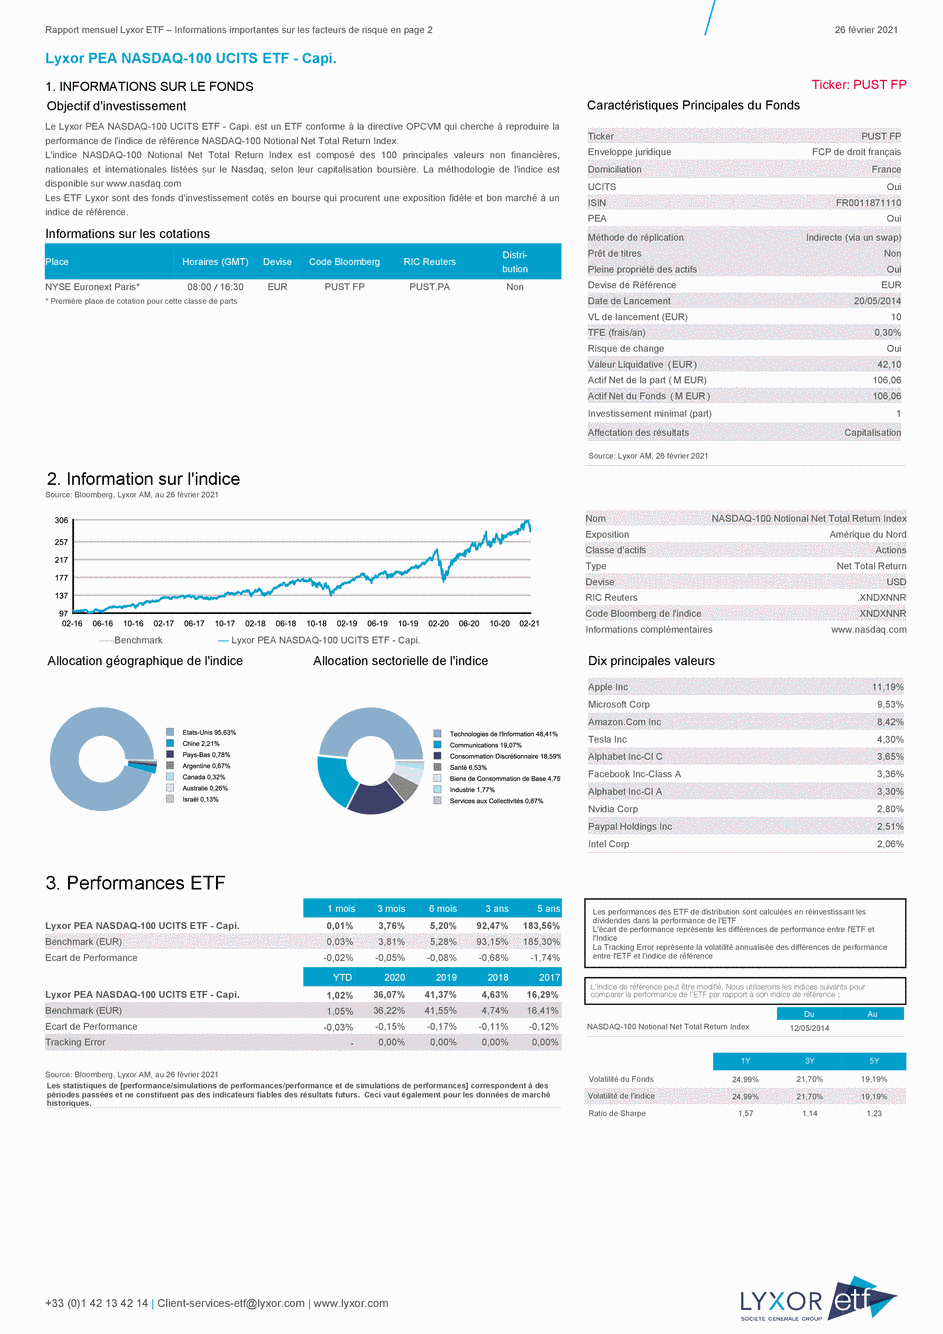 Reporting Lyxor PEA NASDAQ-100 UCITS ETF - Capi. - 26/02/2021 - Français